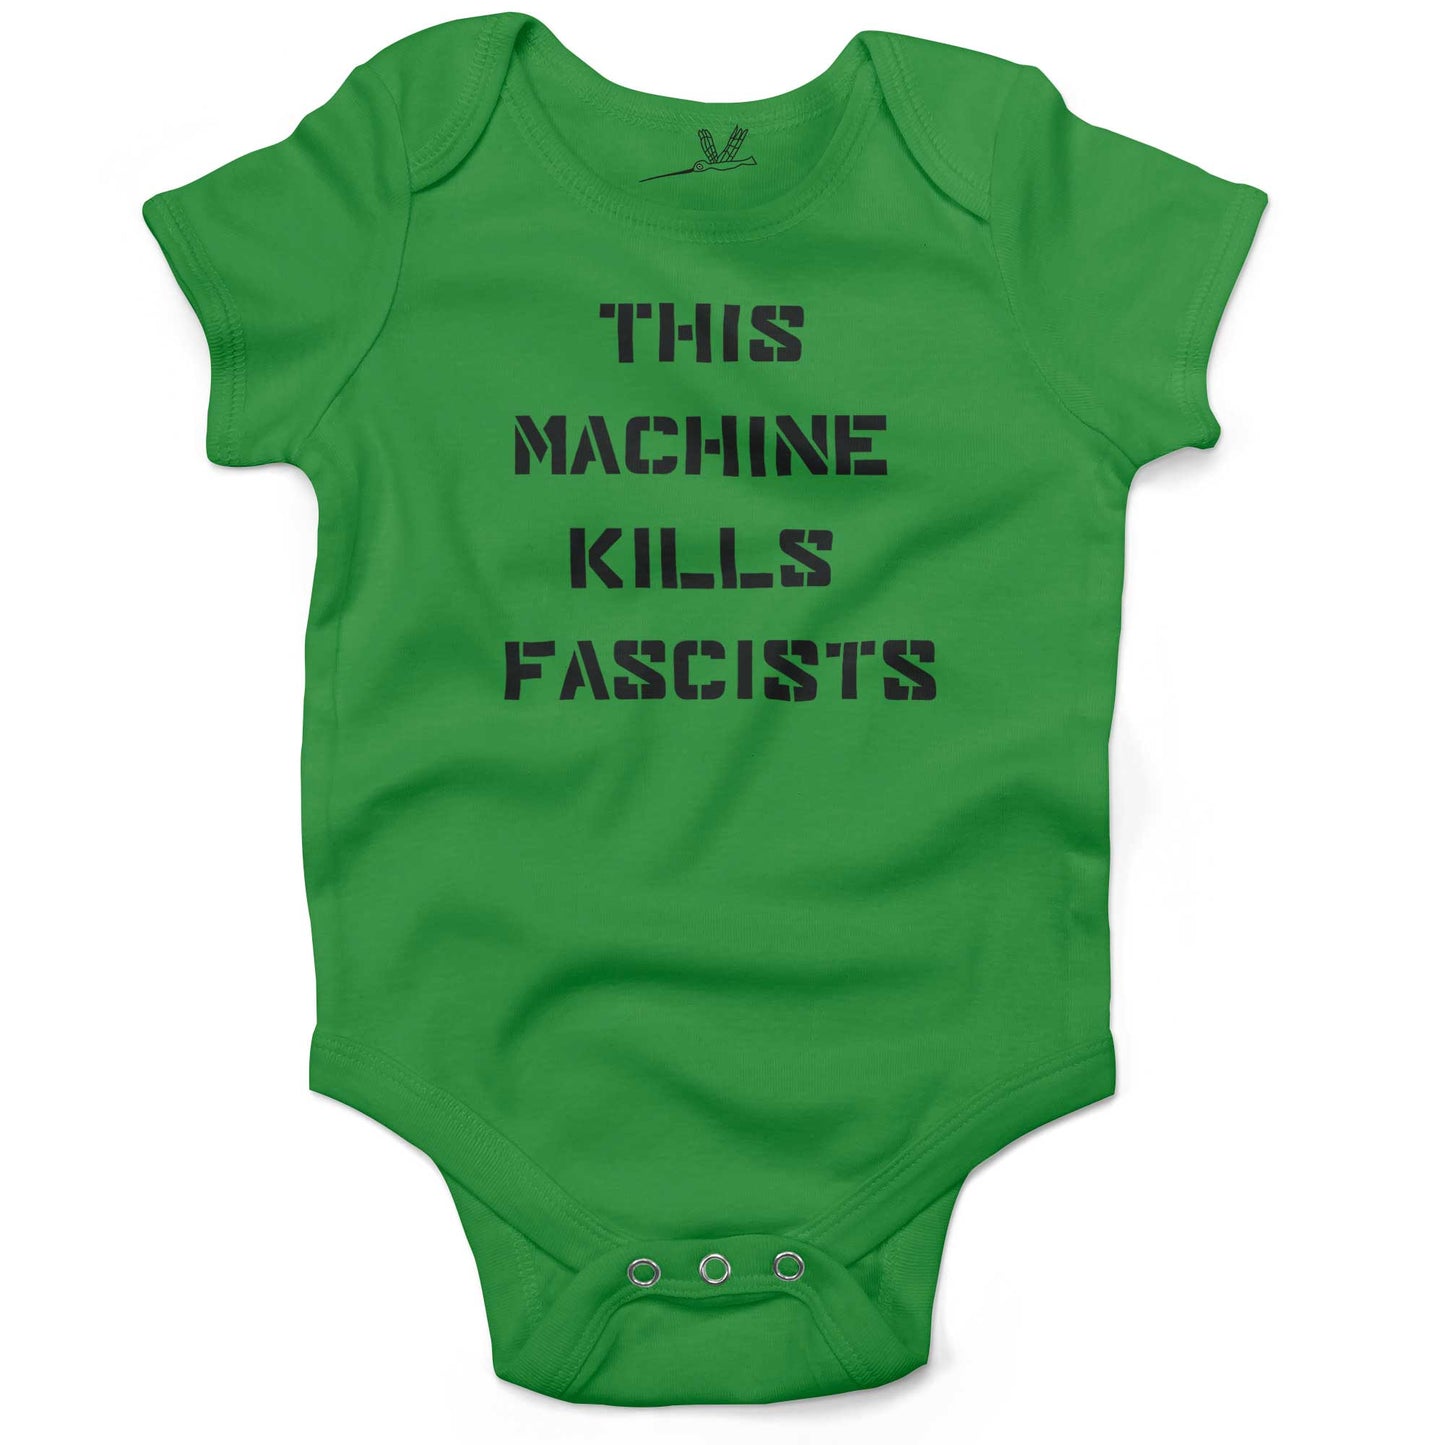 This Machine Kills Fascists Baby One Piece or Raglan Tee-Grass Green-3-6 months